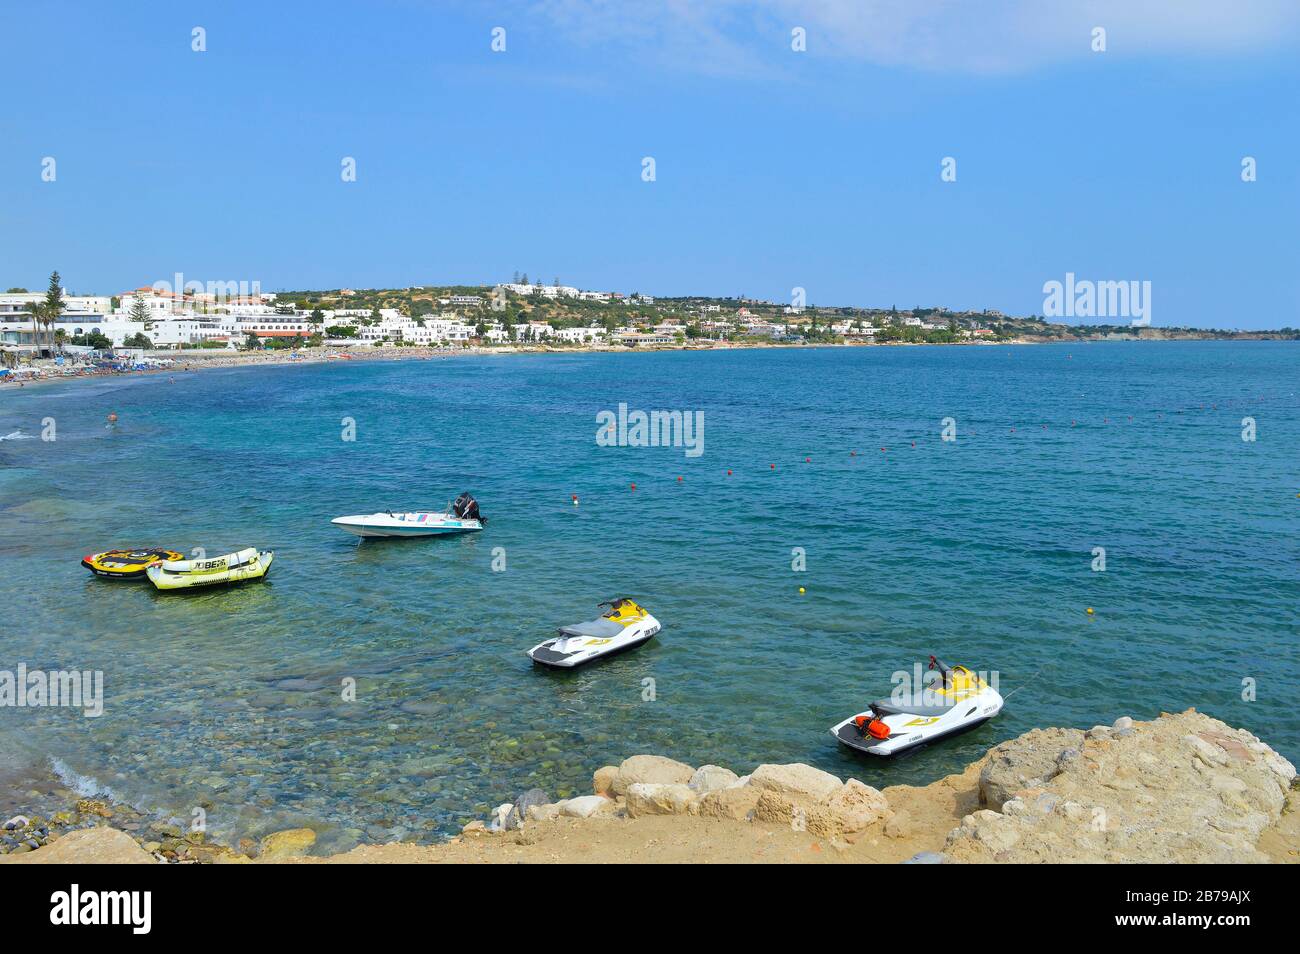 Noleggio moto d'acqua sulla spiaggia di Hersonissos a Creta, la più grande  e popolata delle isole greche Foto stock - Alamy